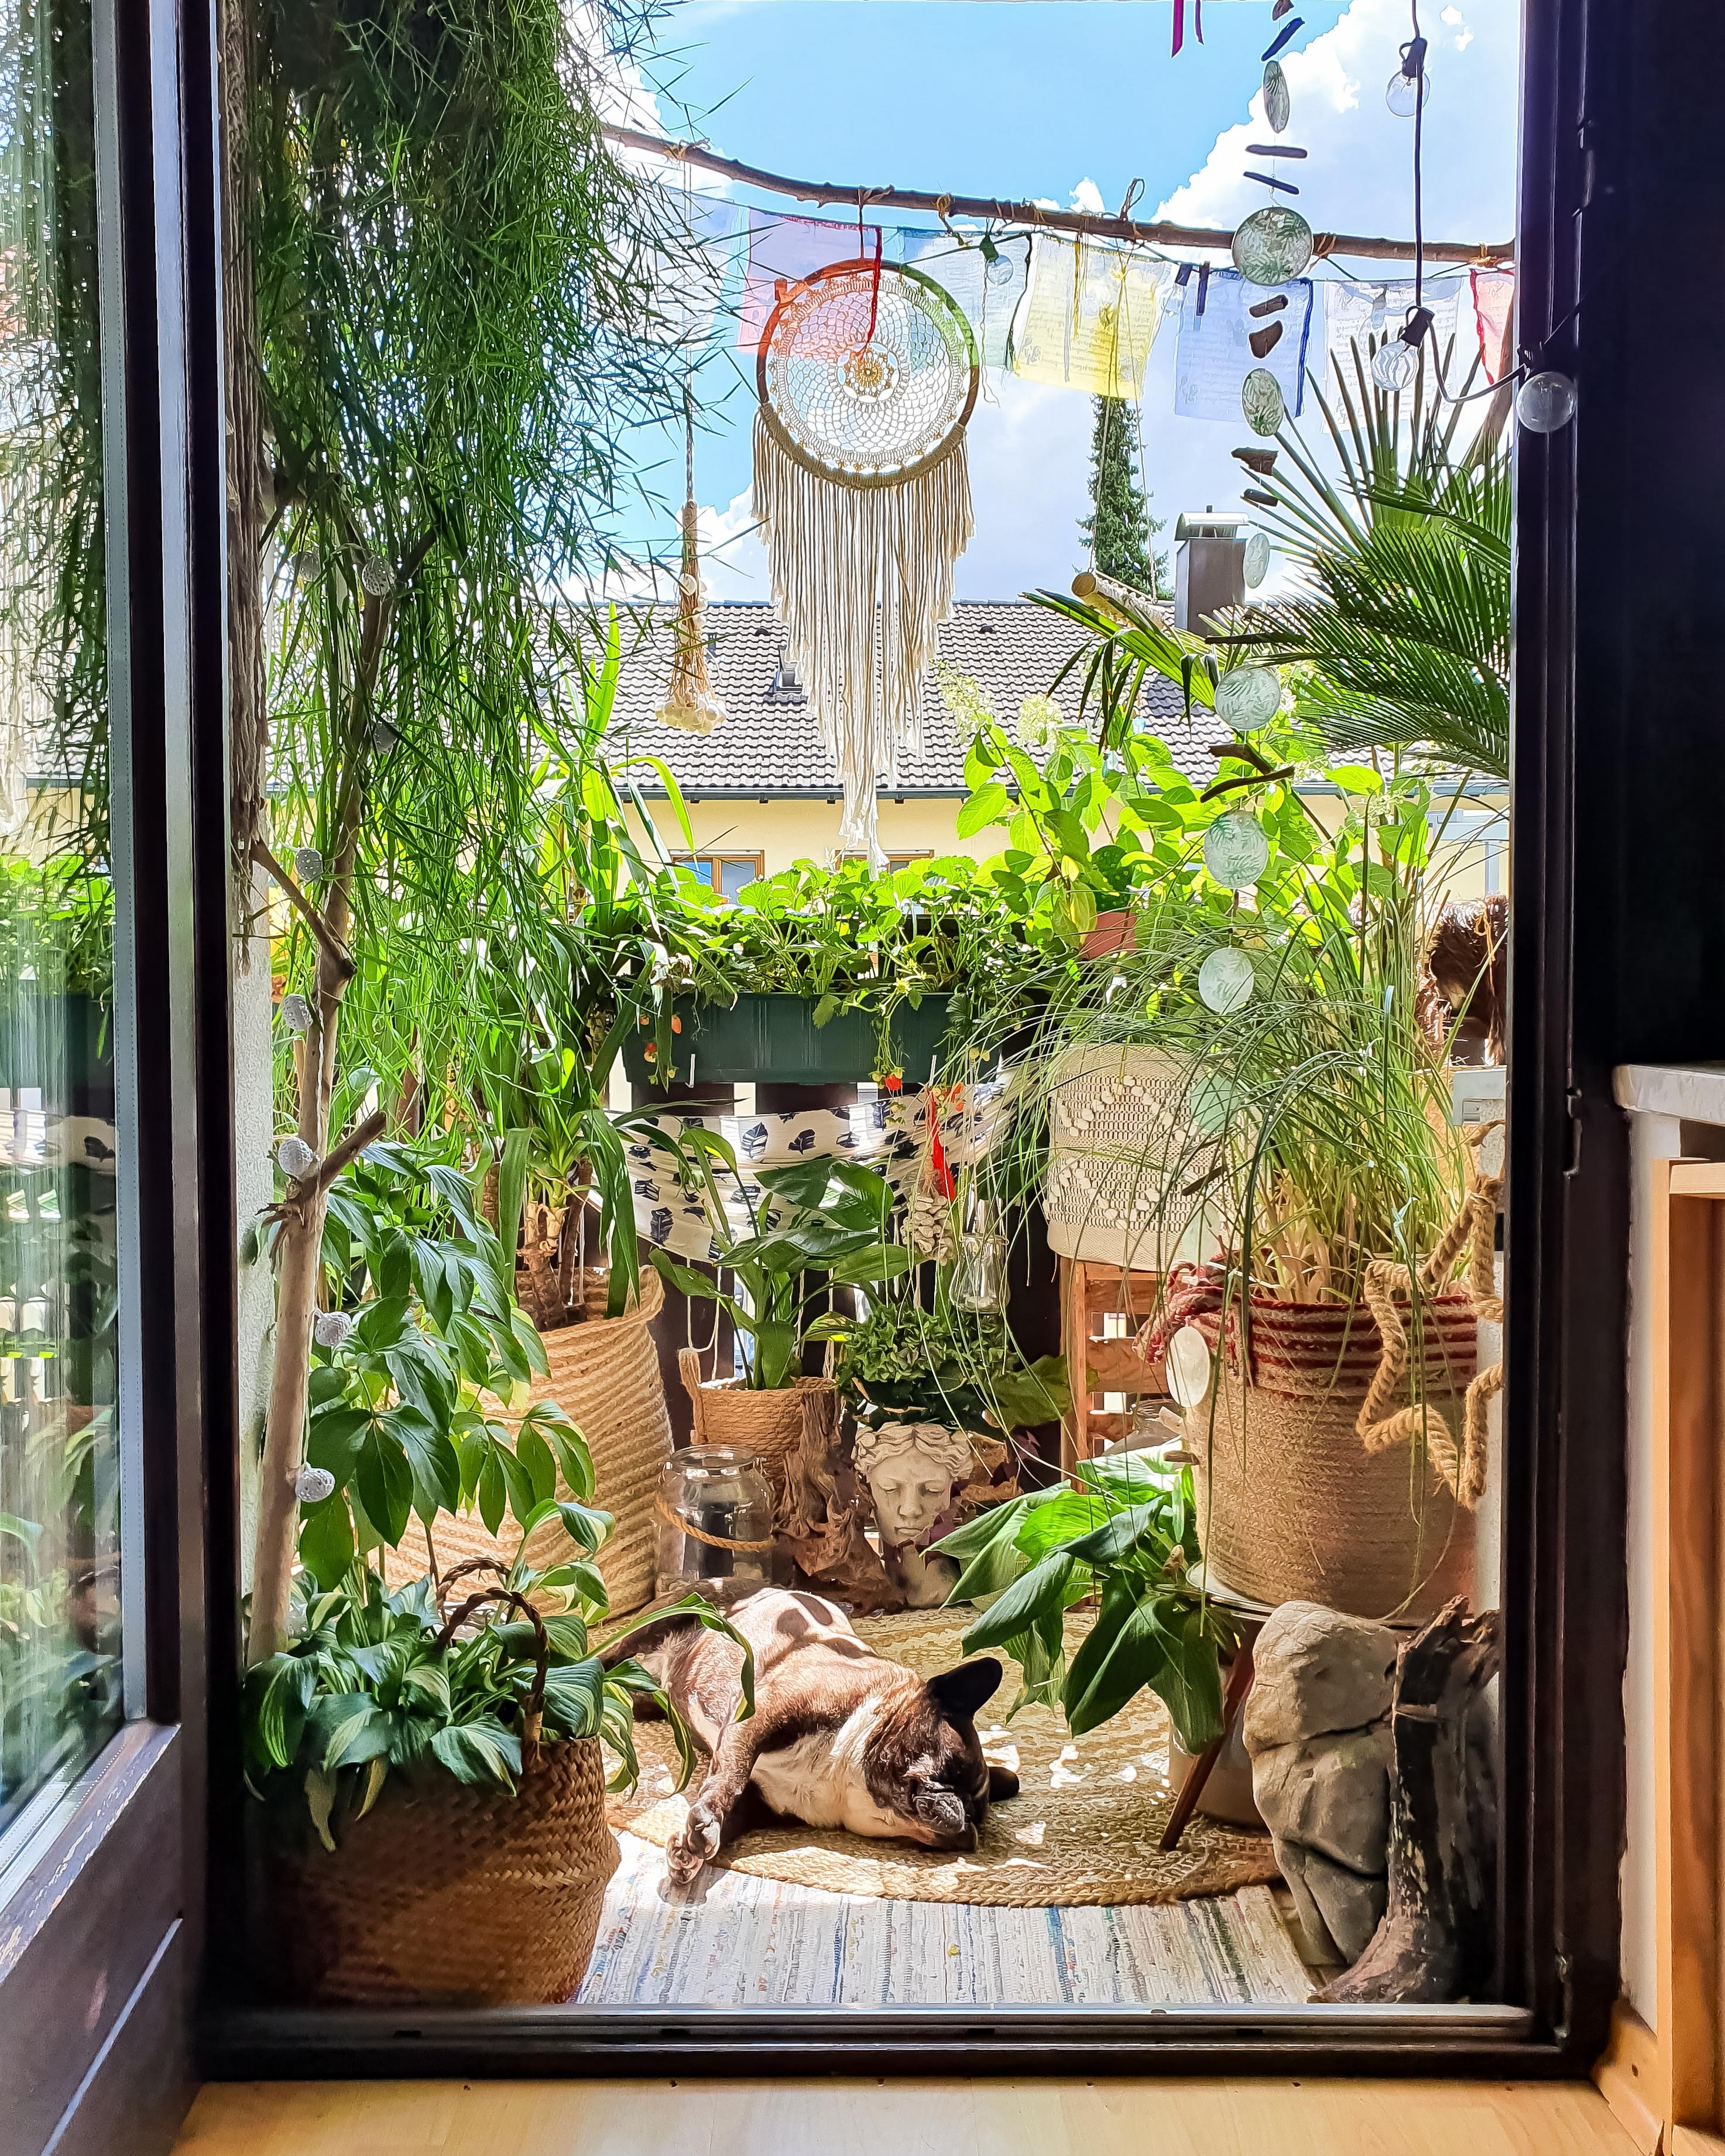 Sommersonnentag #Balkon #Pflanzen #Traumfänger #hippie #boho #Terrasse #Lounge #Ausblick 